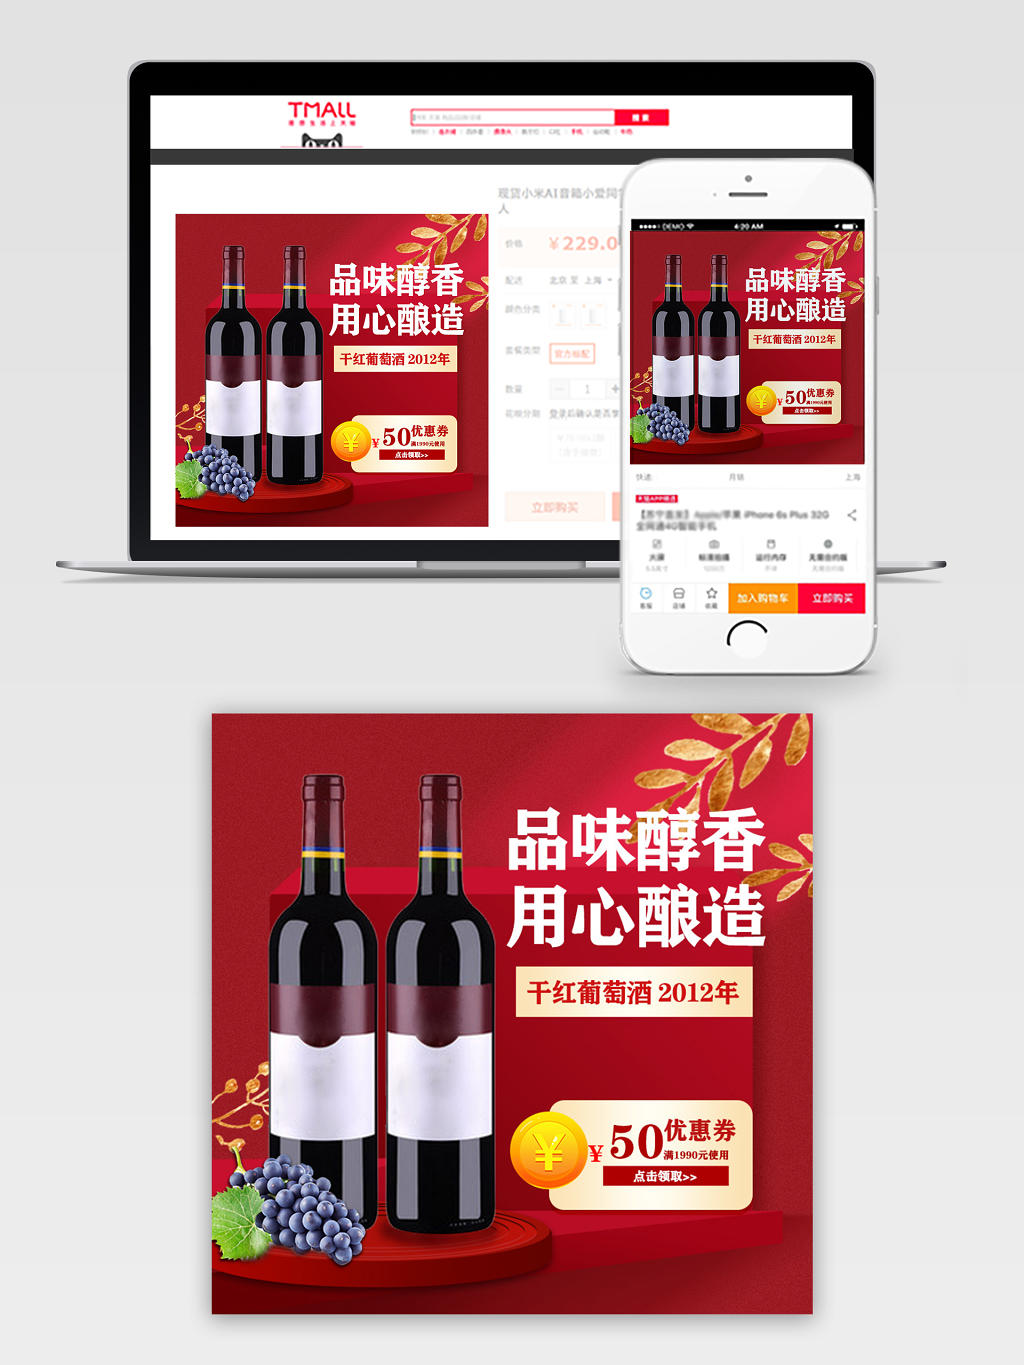 天猫商城零食类食品红色优惠卷葡萄促销活动葡萄酒主图